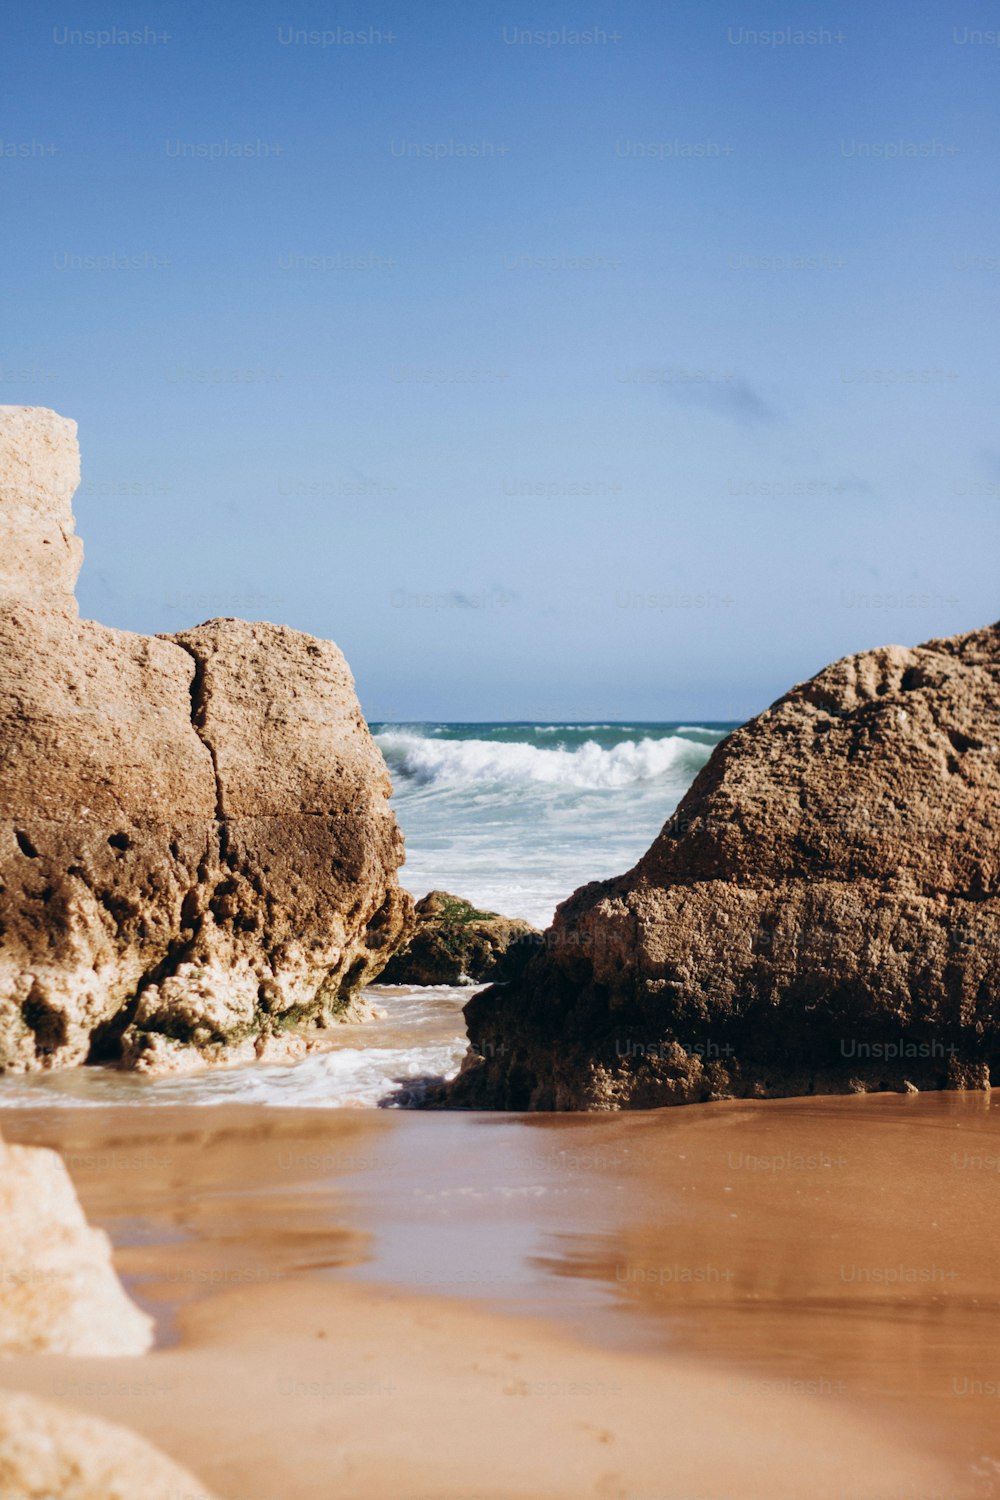 a rock formation on a beach near the ocean